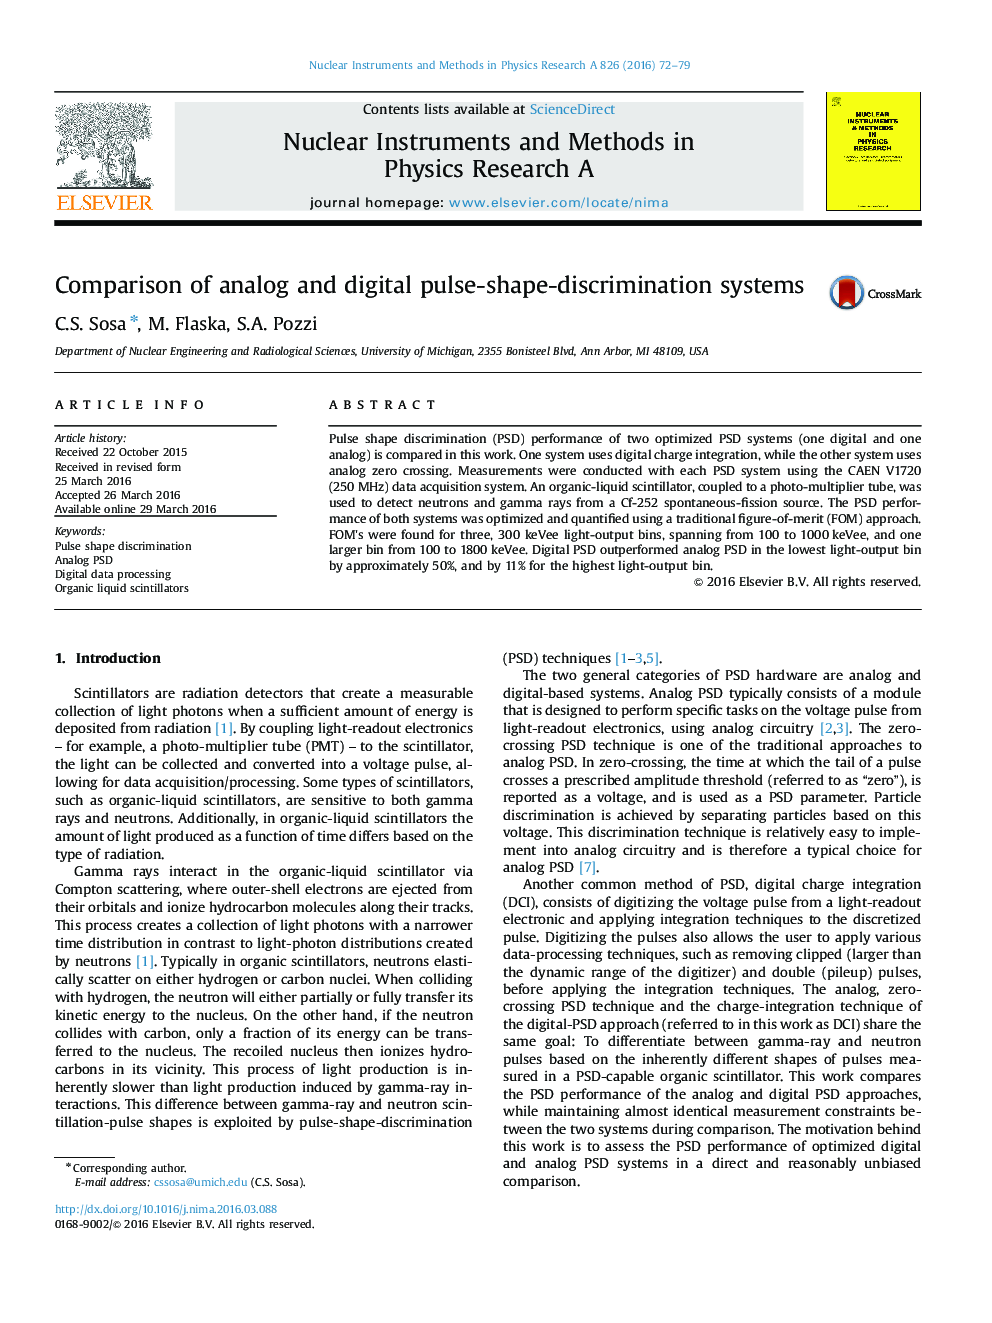 مقایسه سیستم های تقسیم پالس و دیجیتال آنالوگ و دیجیتال 